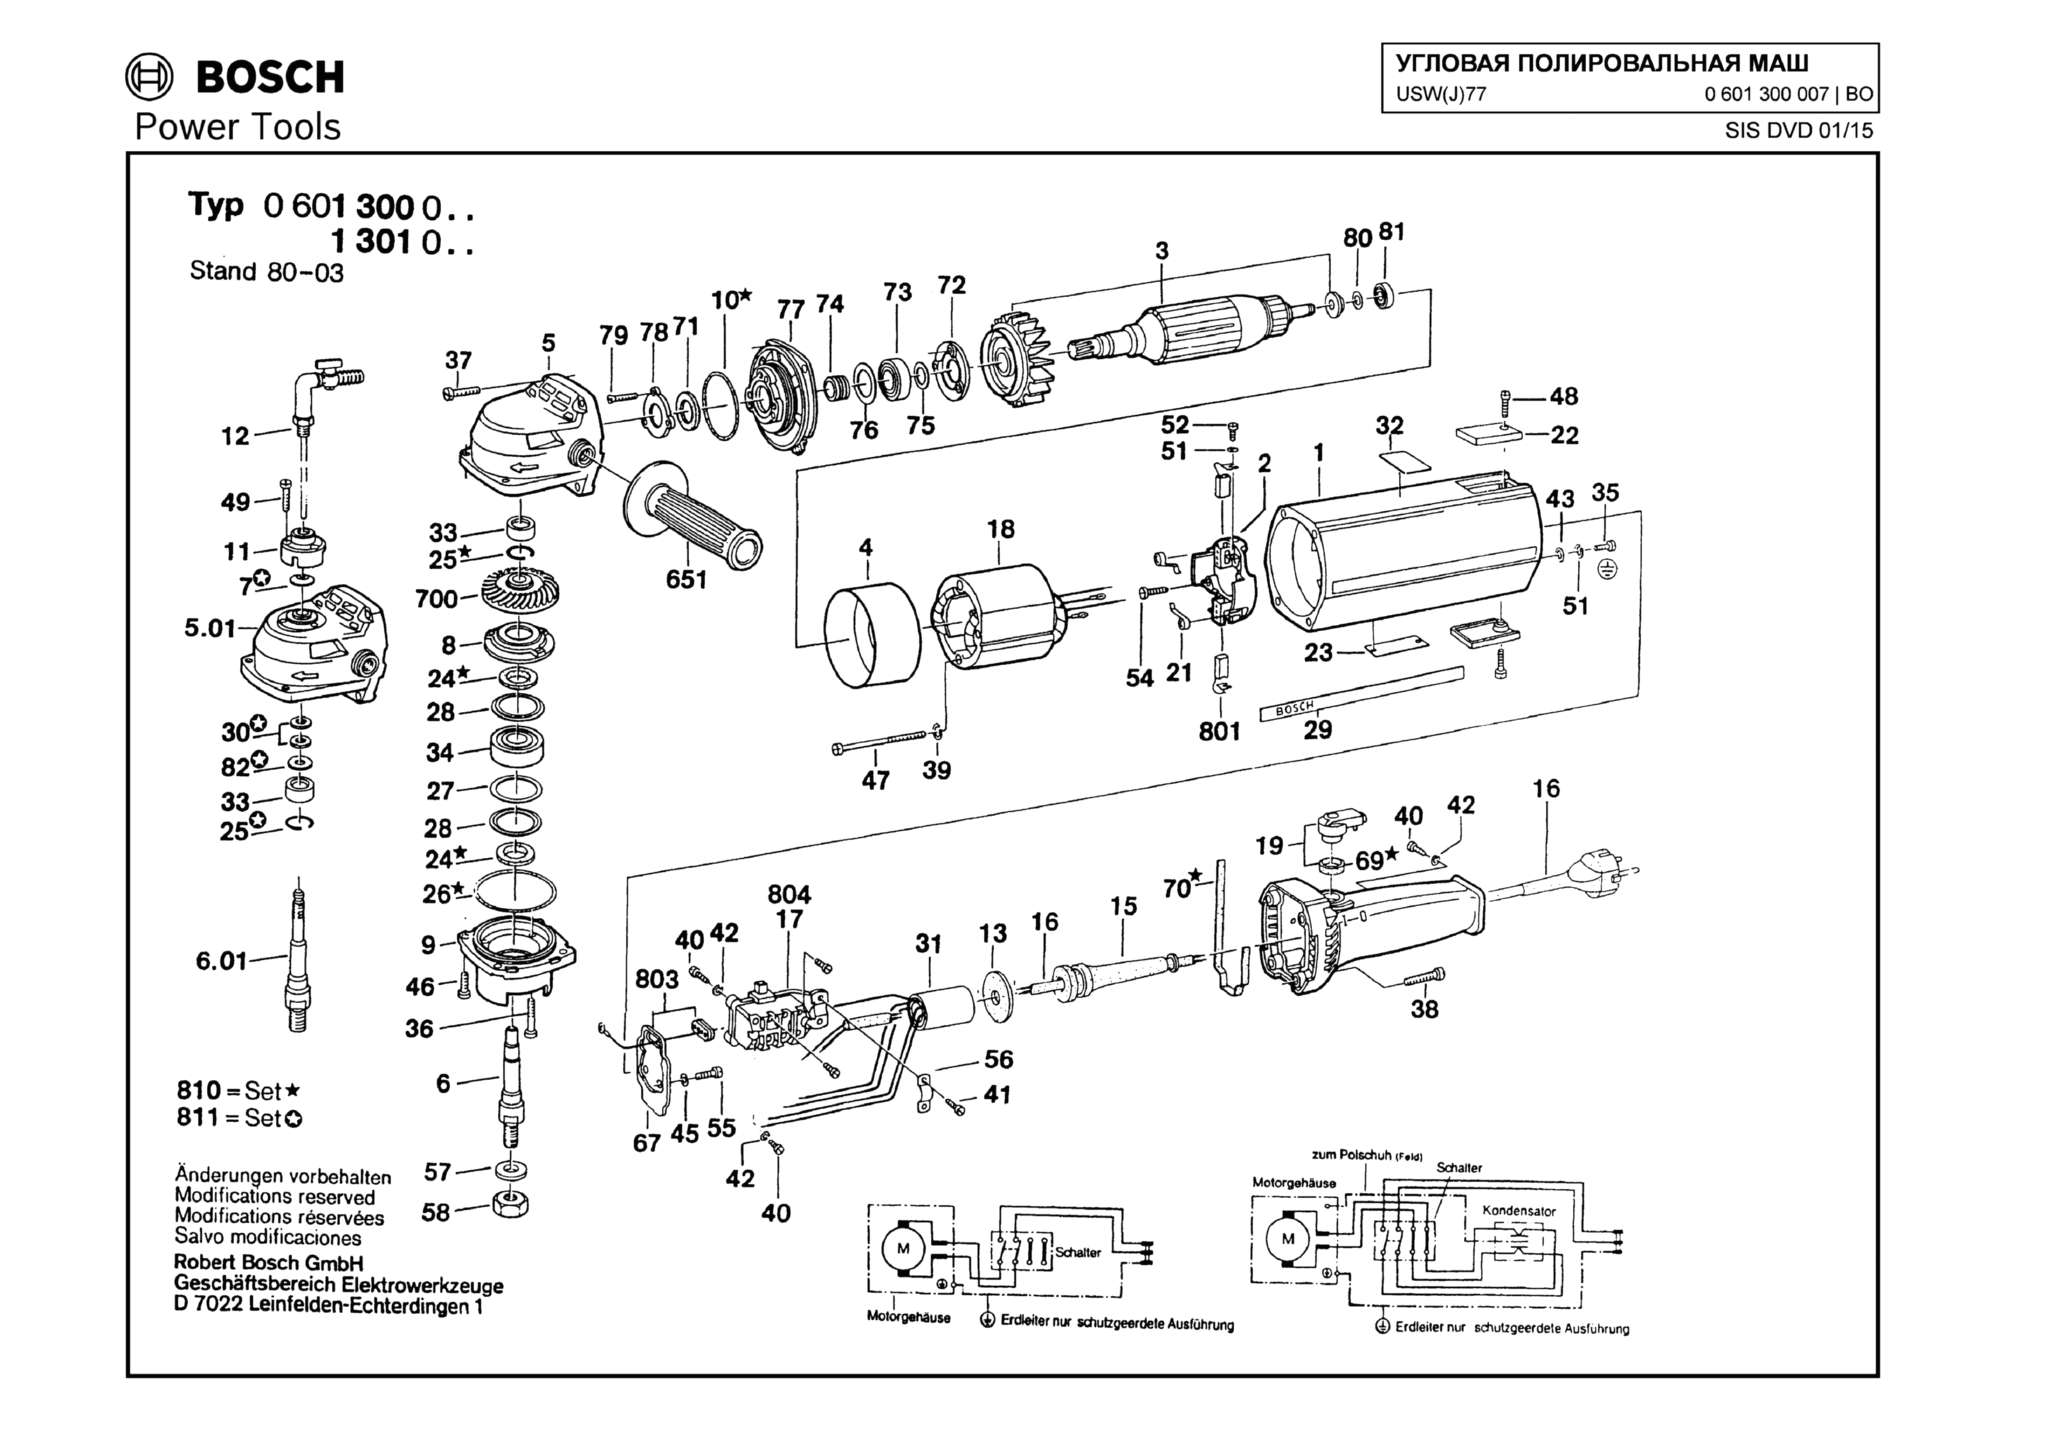 Запчасти, схема и деталировка Bosch USW(J)77 (ТИП 0601300007)